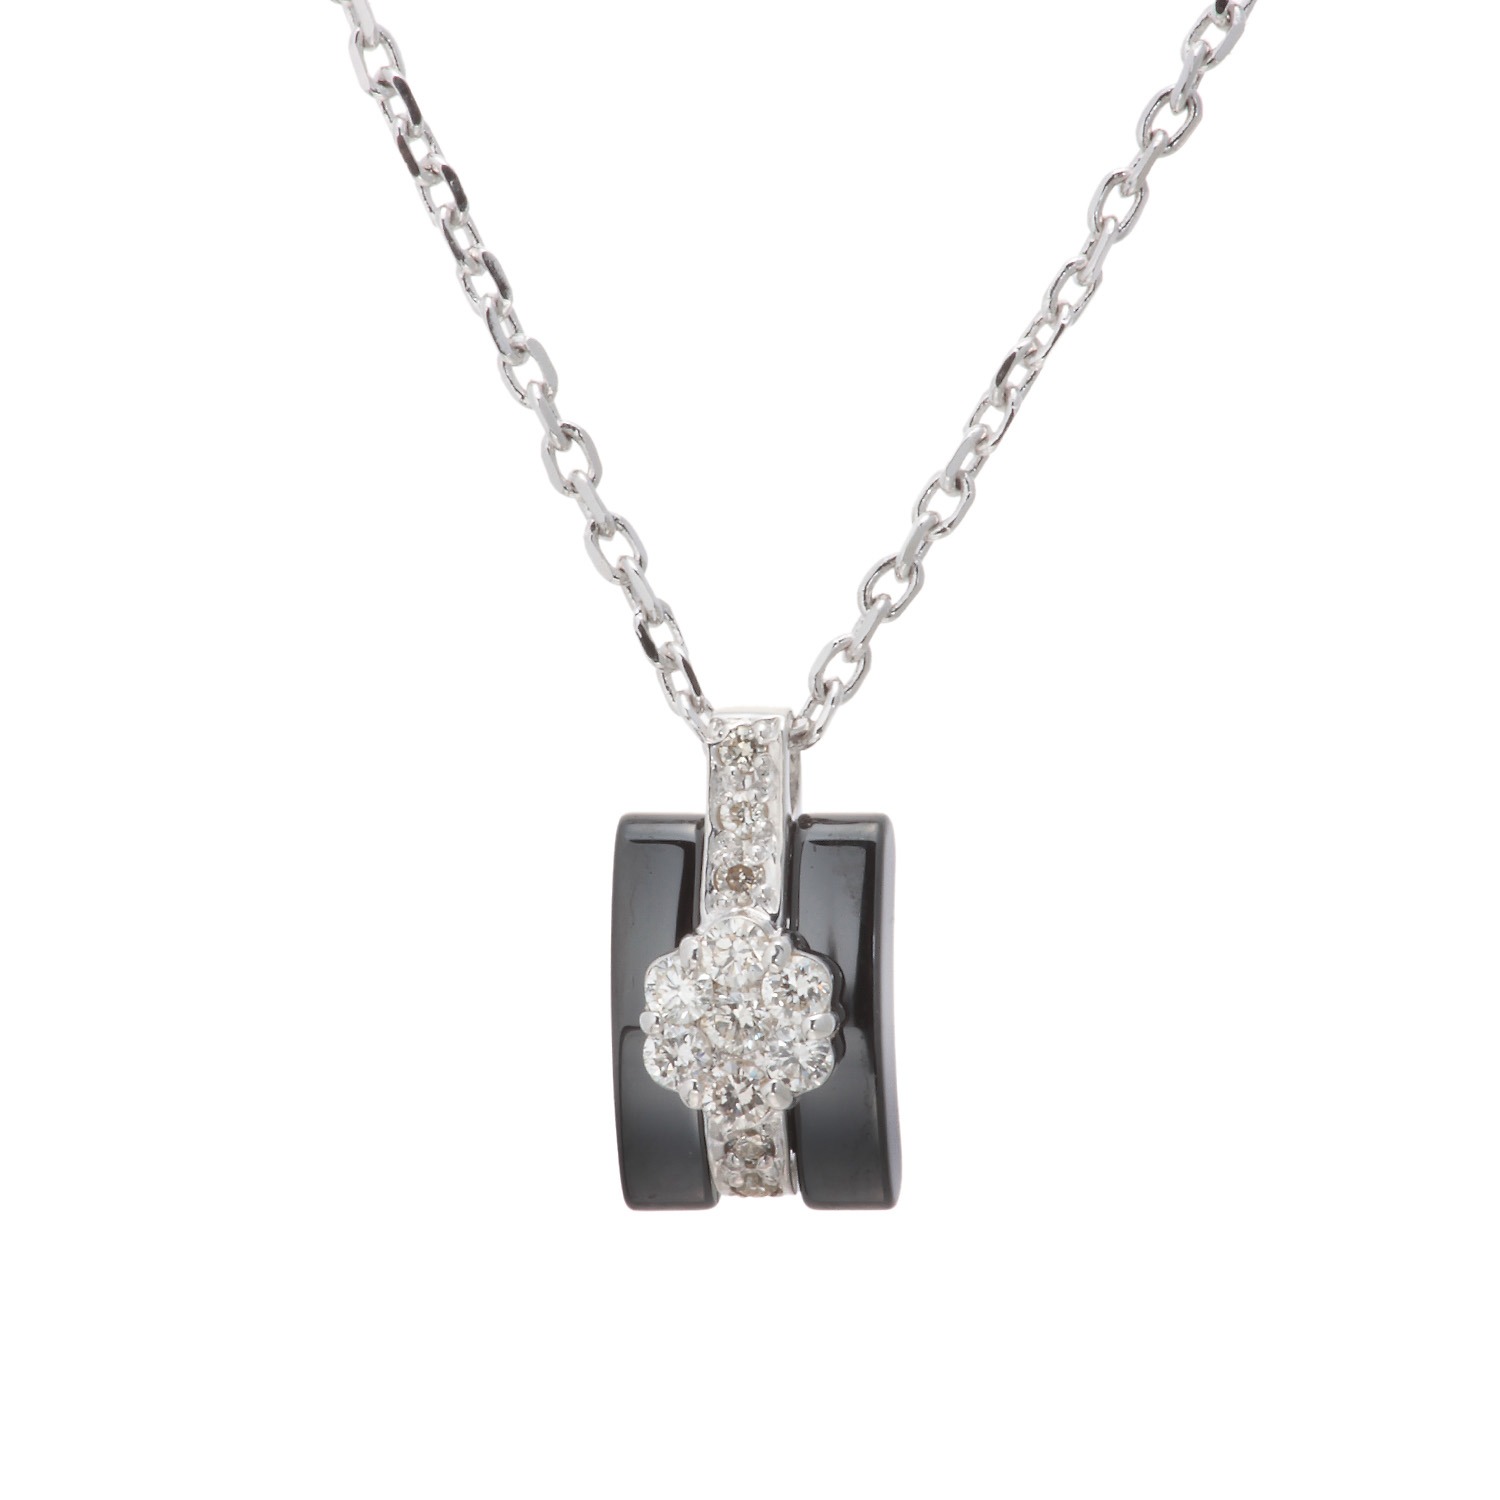 ソルジェ
シルバー
ブラックセラミック
ダイヤモンド
ミステリーセッティング
ネックレス